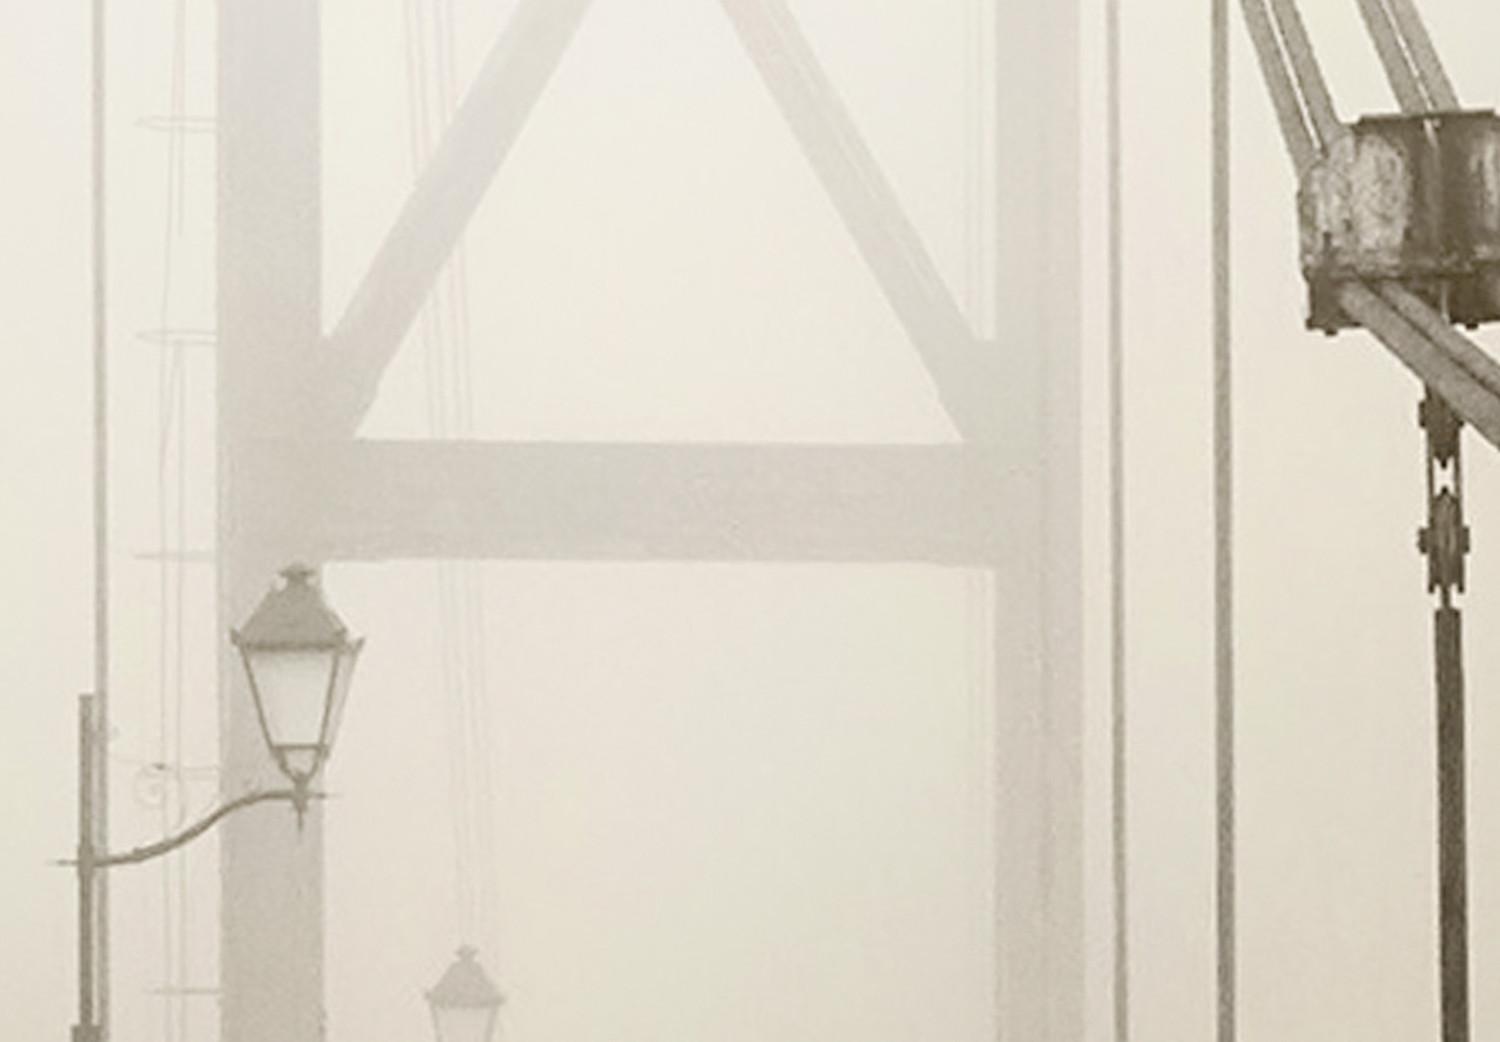 Poster Puente en la niebla: arquitectura urbana